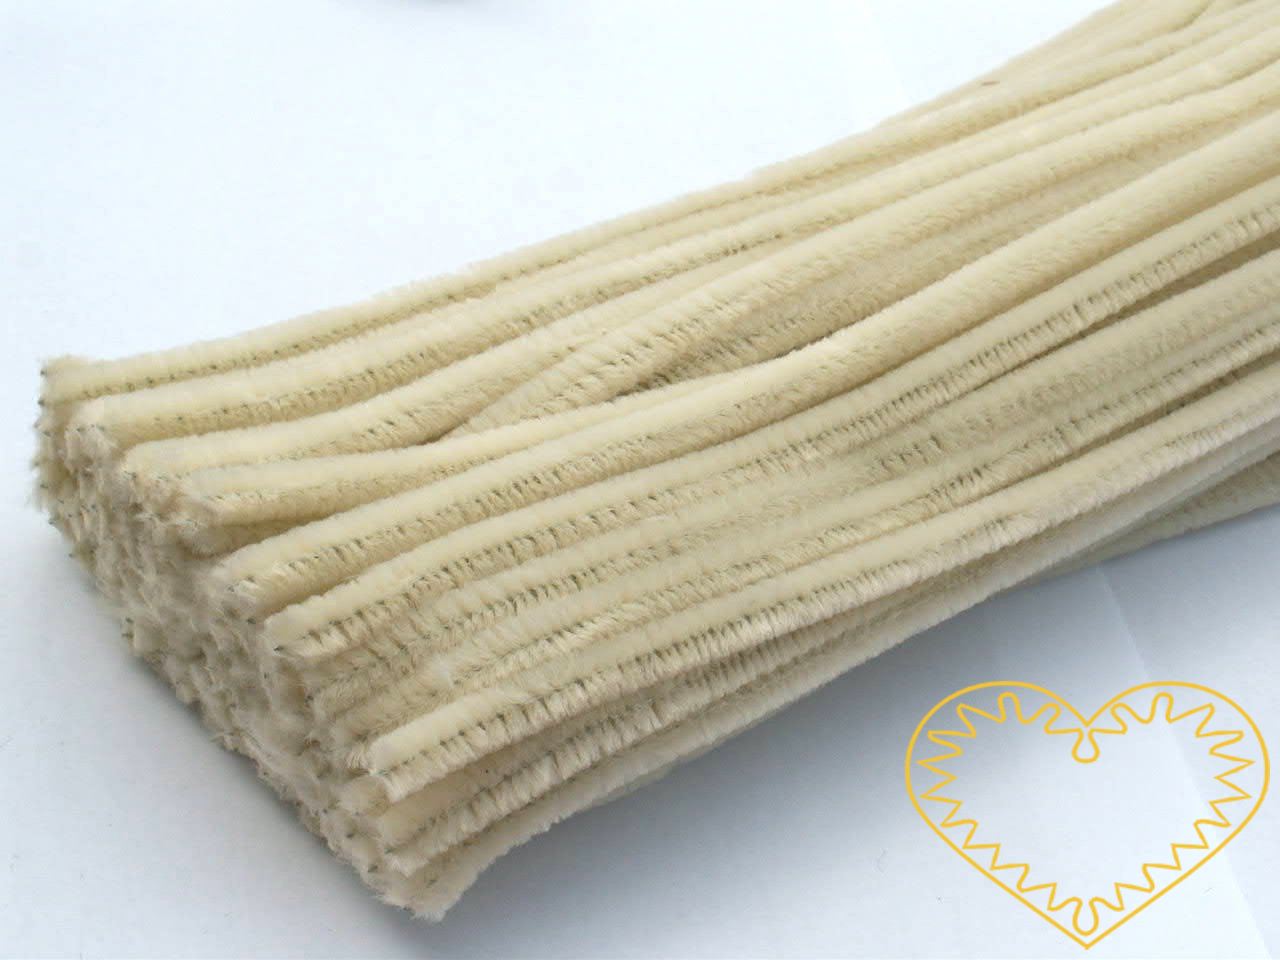 Modelovací chlupatý drátek smetanový - délka cca 30 cm. Drátěná tyčinka opletená vláknem se používá k výrobě různých hraček i ozdob. Lze ji všelijak tvarovat, kroutit, splétat, stříhat, kombinovat například s bambulkami, lepit. Drátek skvěle imituje 